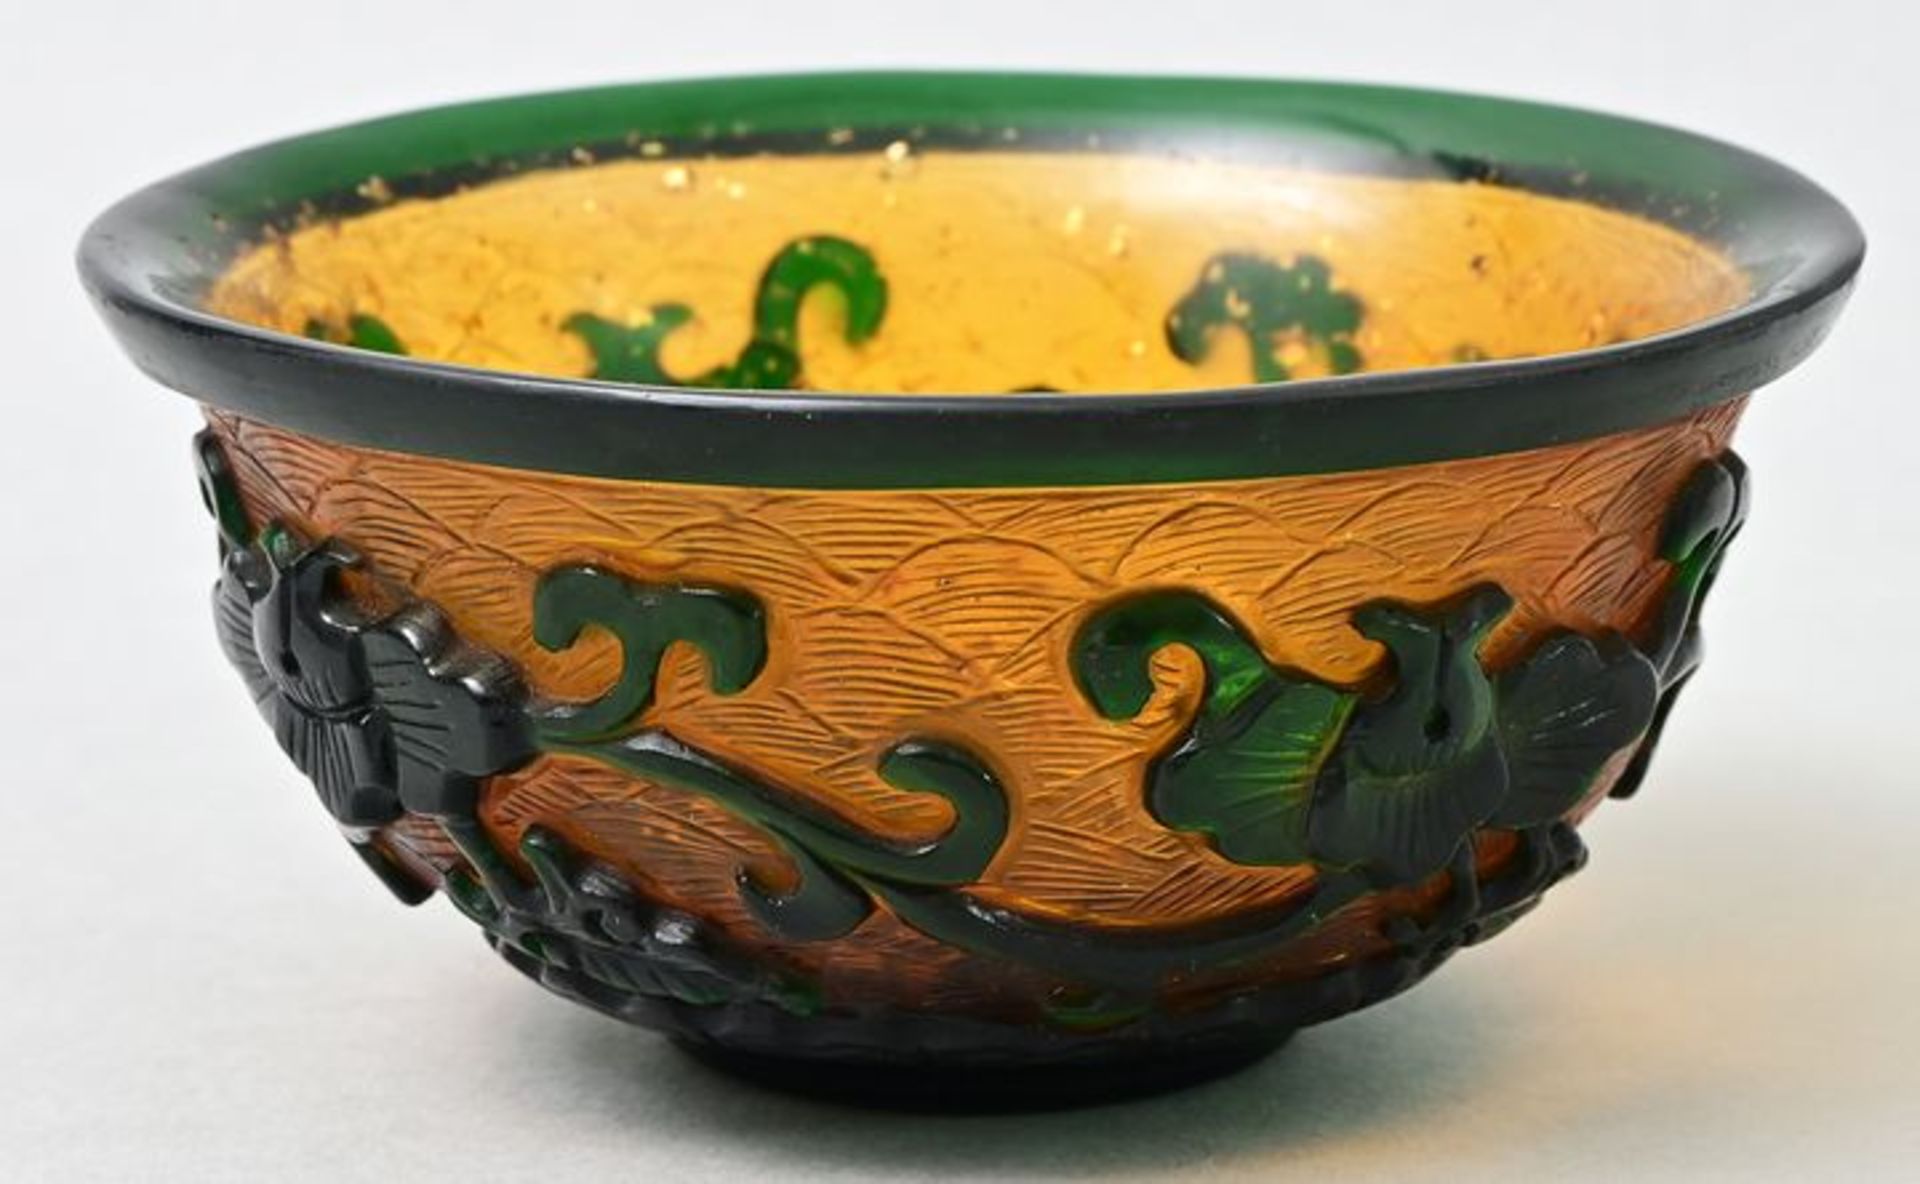 Schale Peking-Glas/ Peking glass bowl